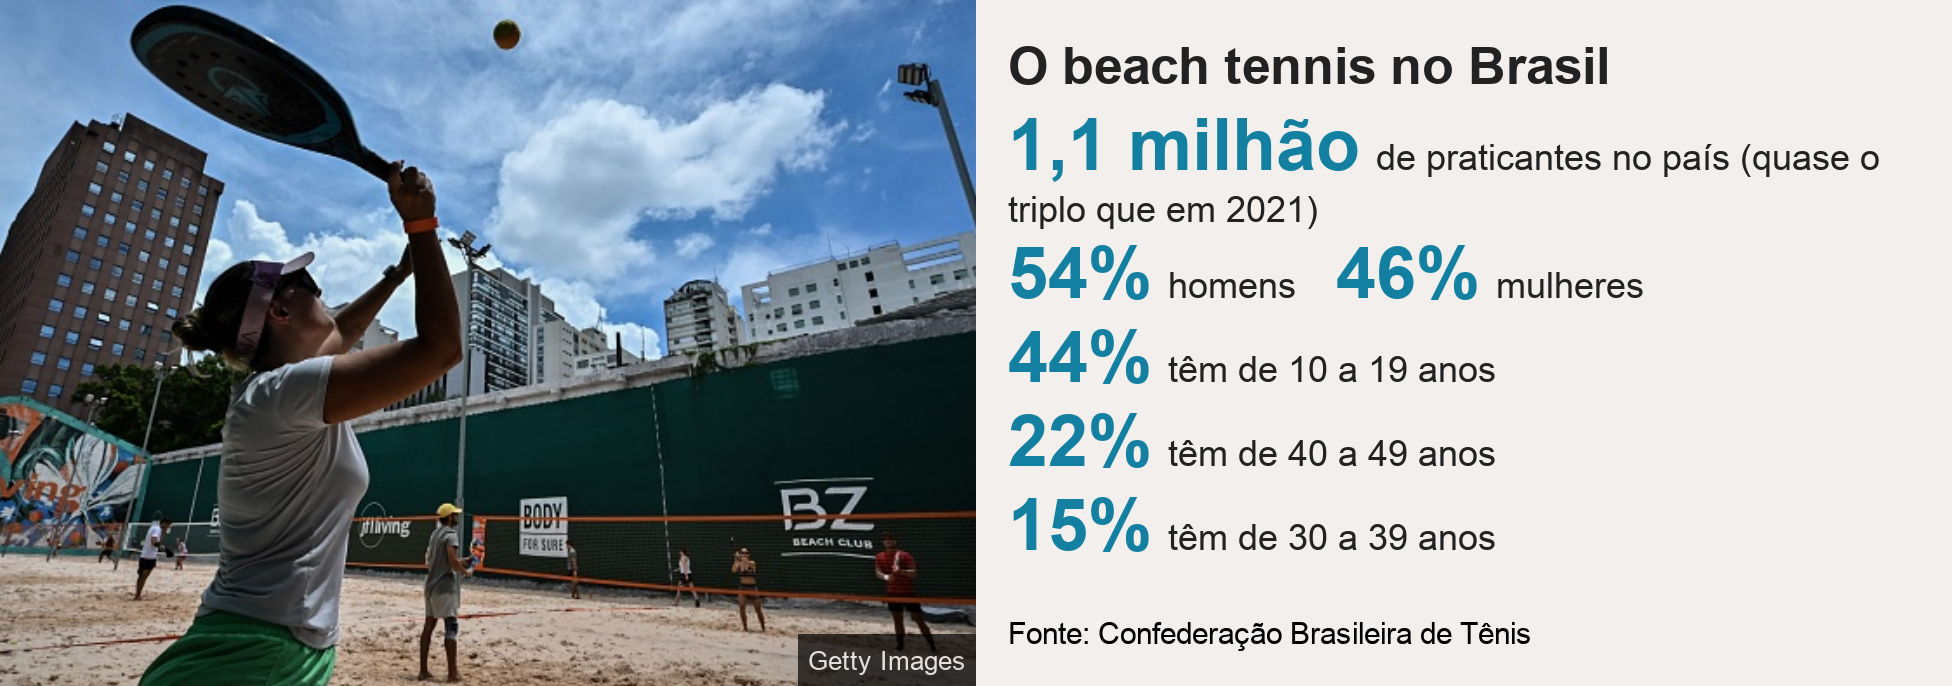 Gráfico. Título: O beach tennis no Brasil/ 1,1 milhão de praticantes no país (quase  o triplo que em 2021), 54% homens, 46% mulheres, 44% têm de 10 a 19 anos, 22% têm de 40 a 49 anos,15% têm de 30 a 39 anos. Fonte: Confederação Brasileira de Tênis. Imagem: Mulher levantando a raquete 